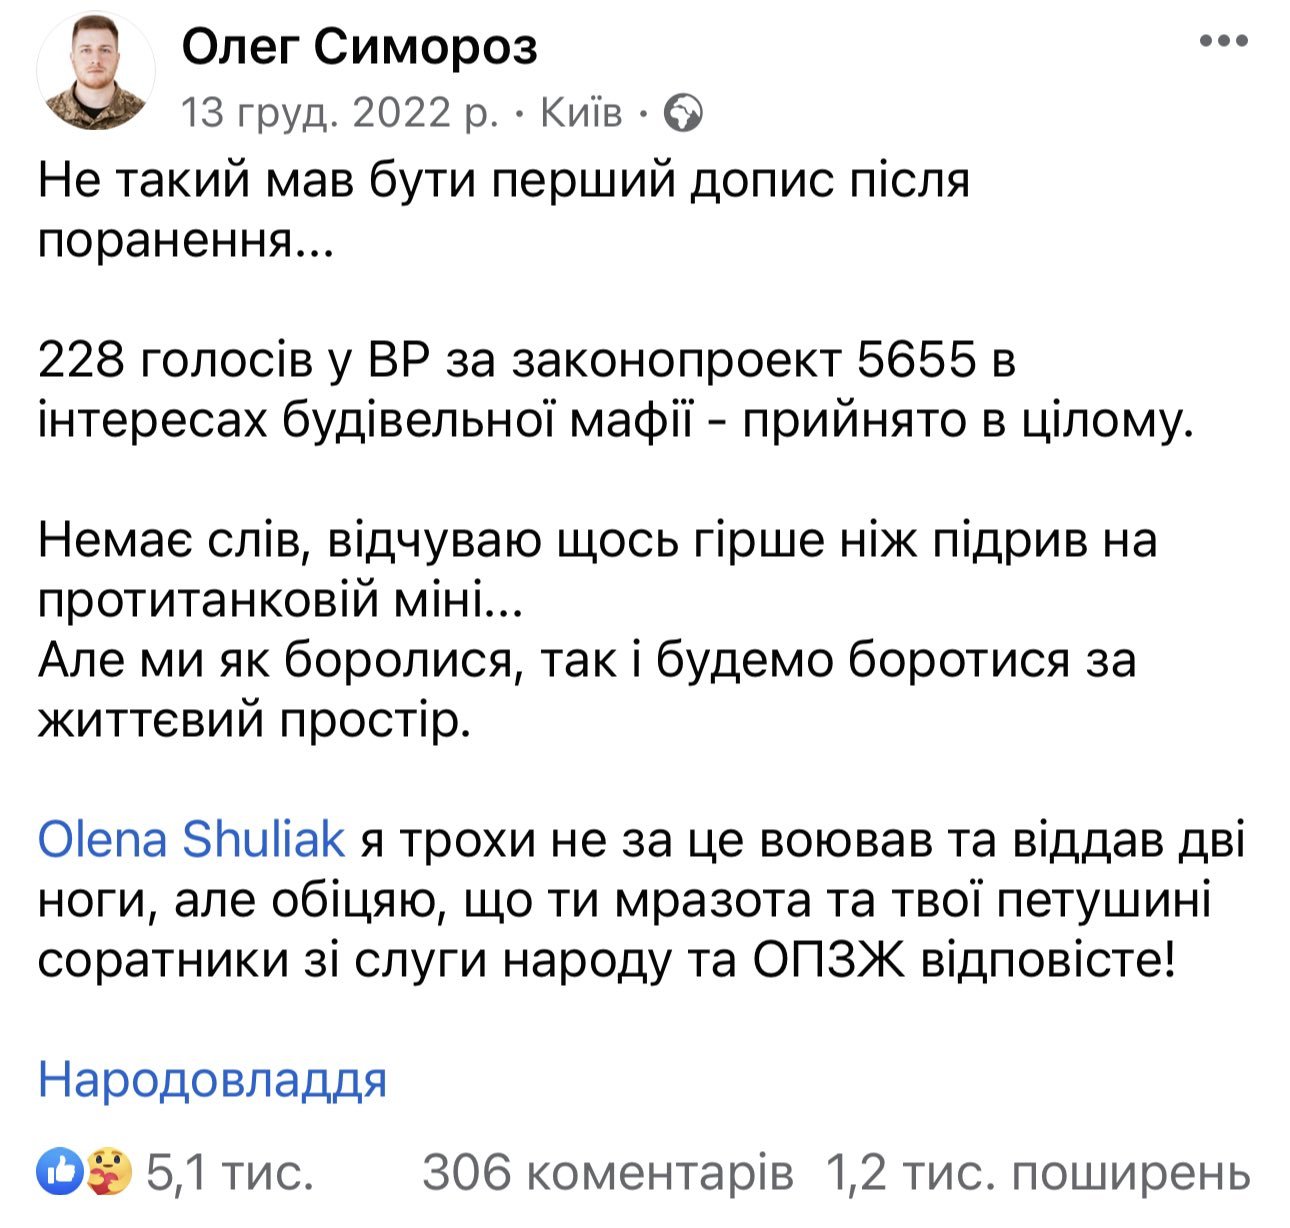 Допис Олега про законопроєкт, що просував інтереси забудовників